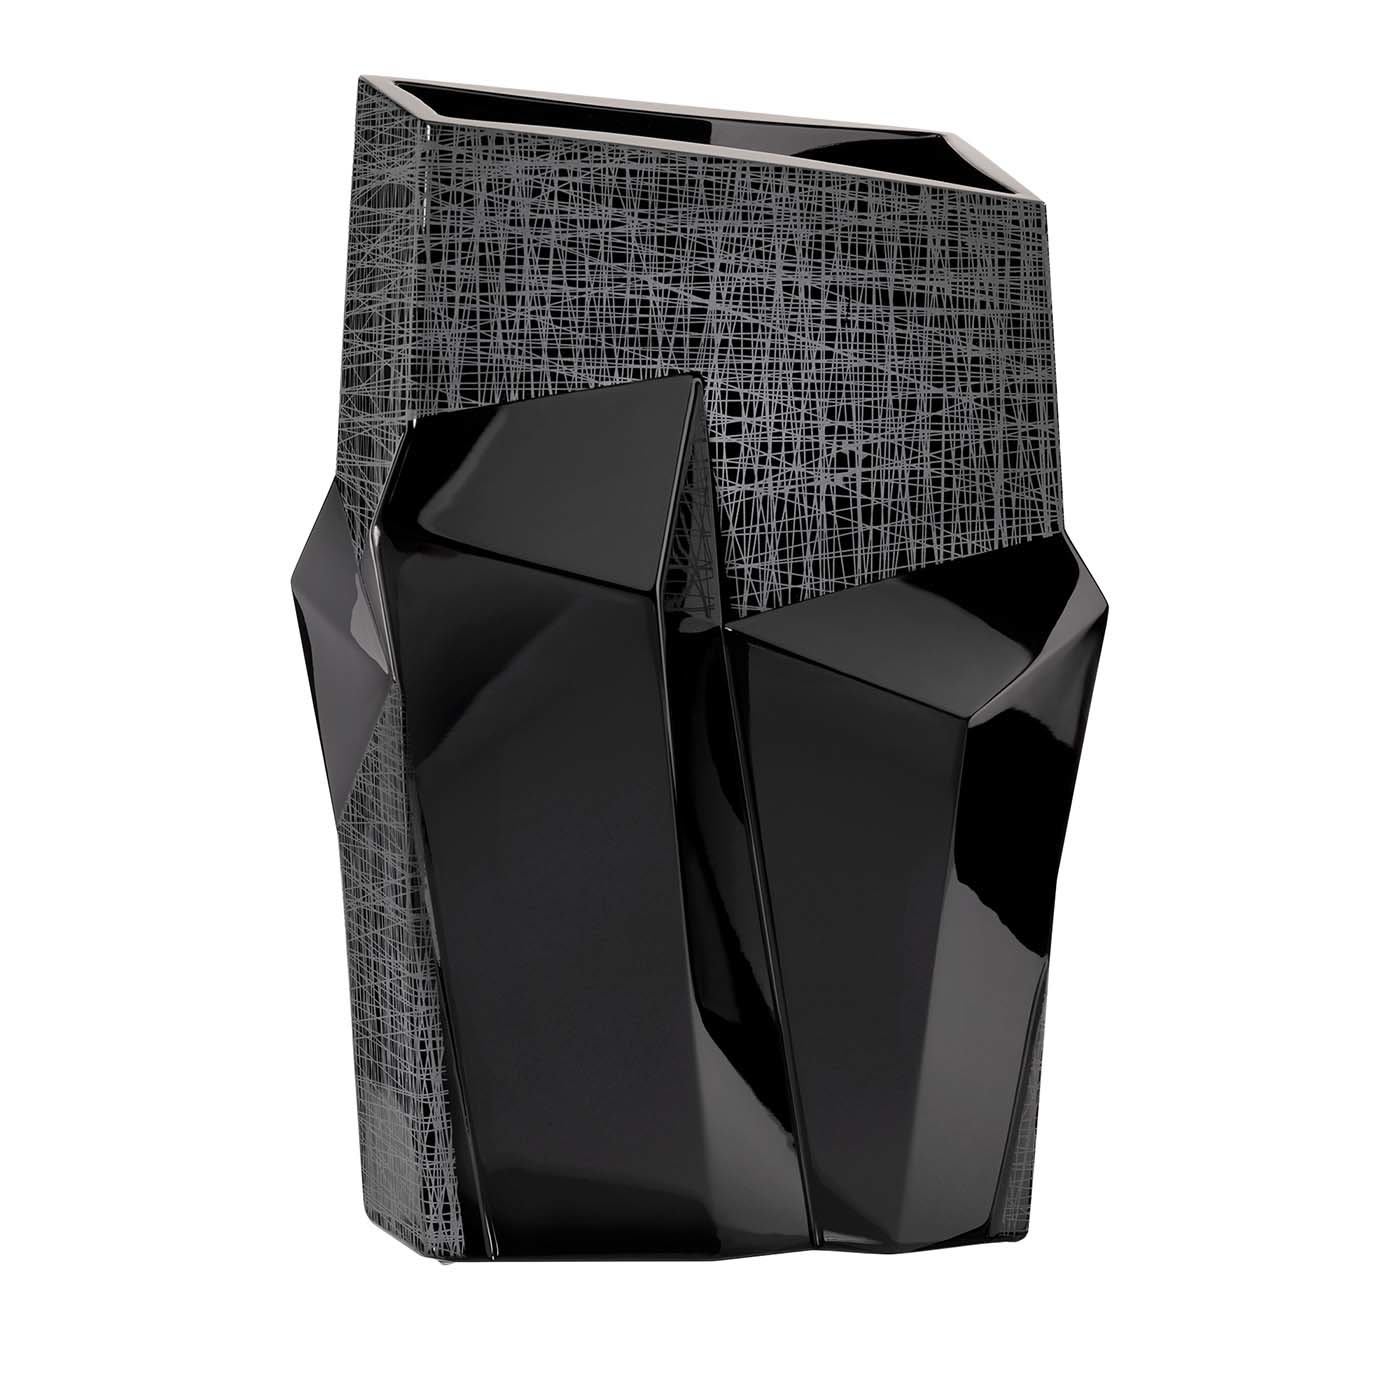 Tondo Doni Metropolis Black Vase - Mario Cioni & C